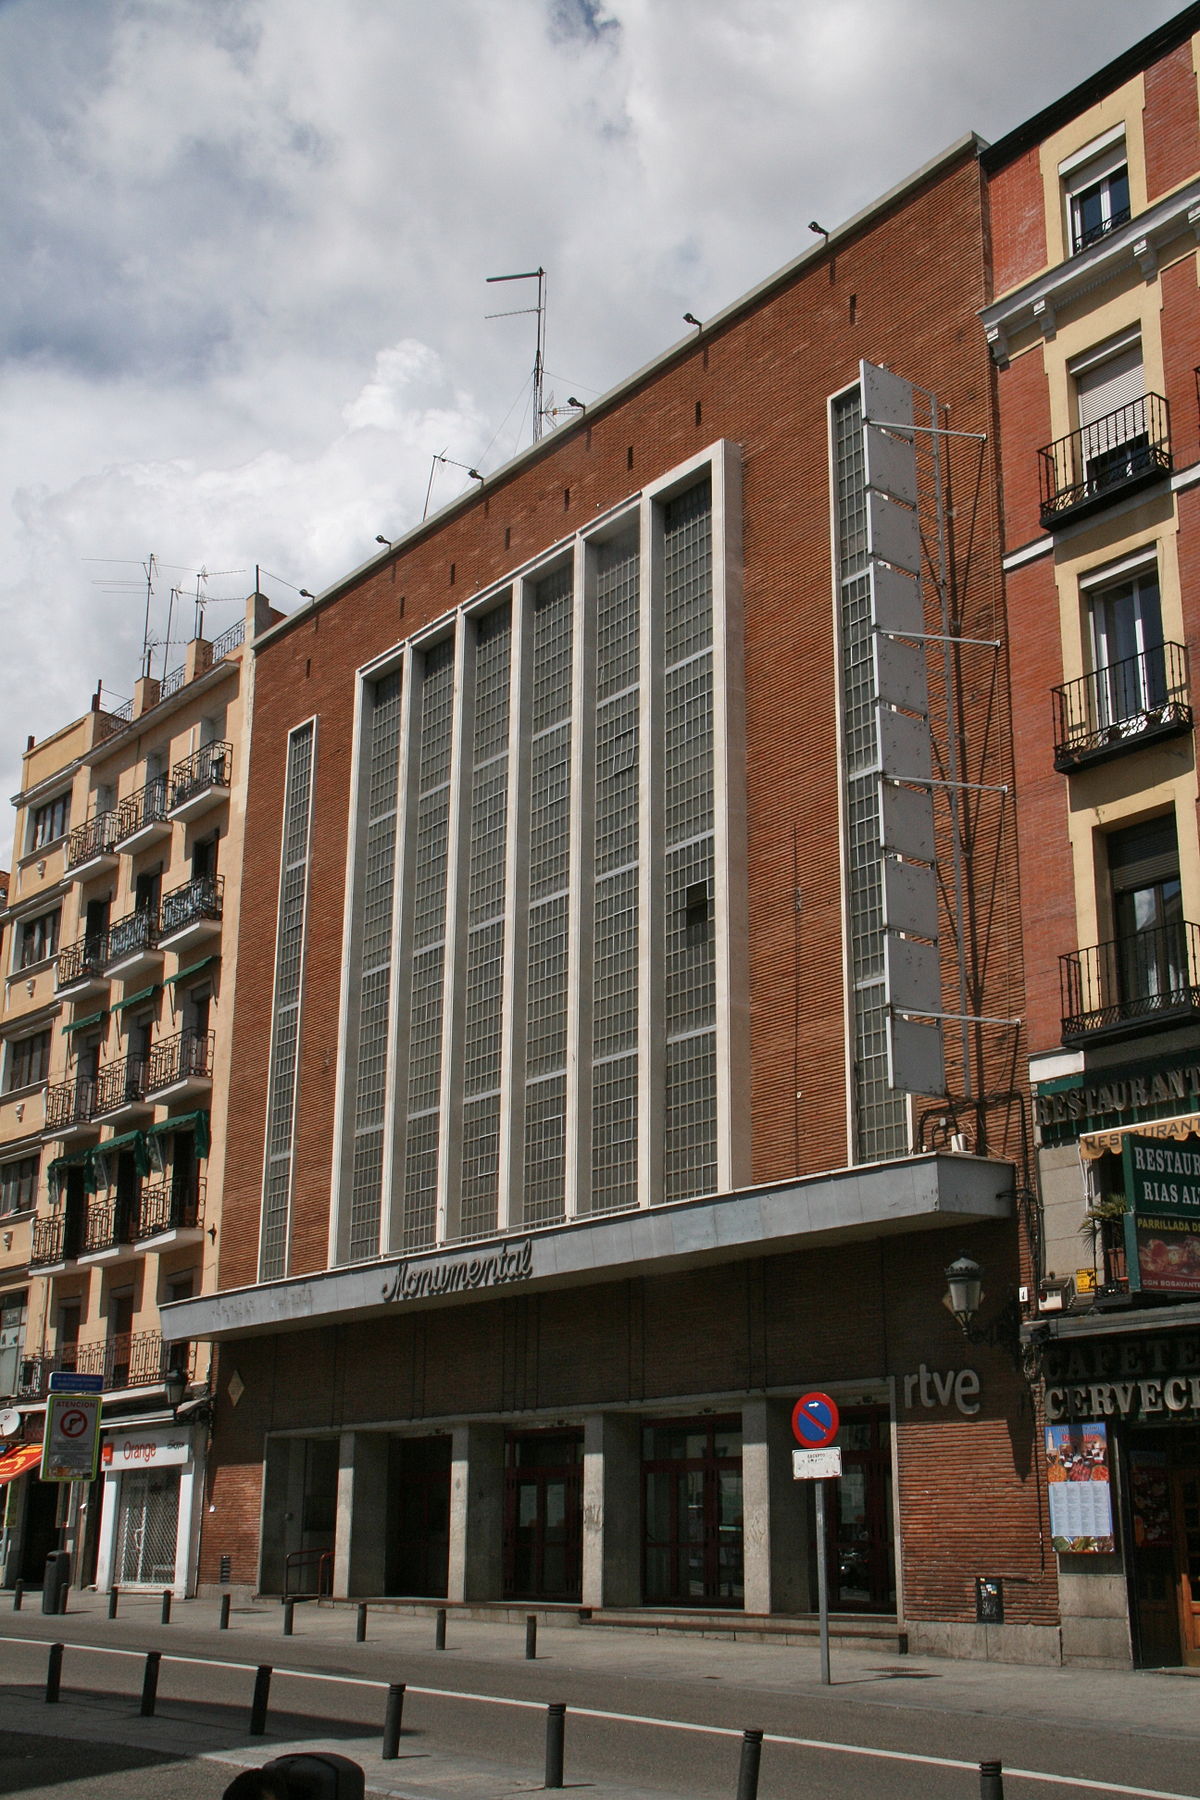 Teatro Monumental - Wikipedia